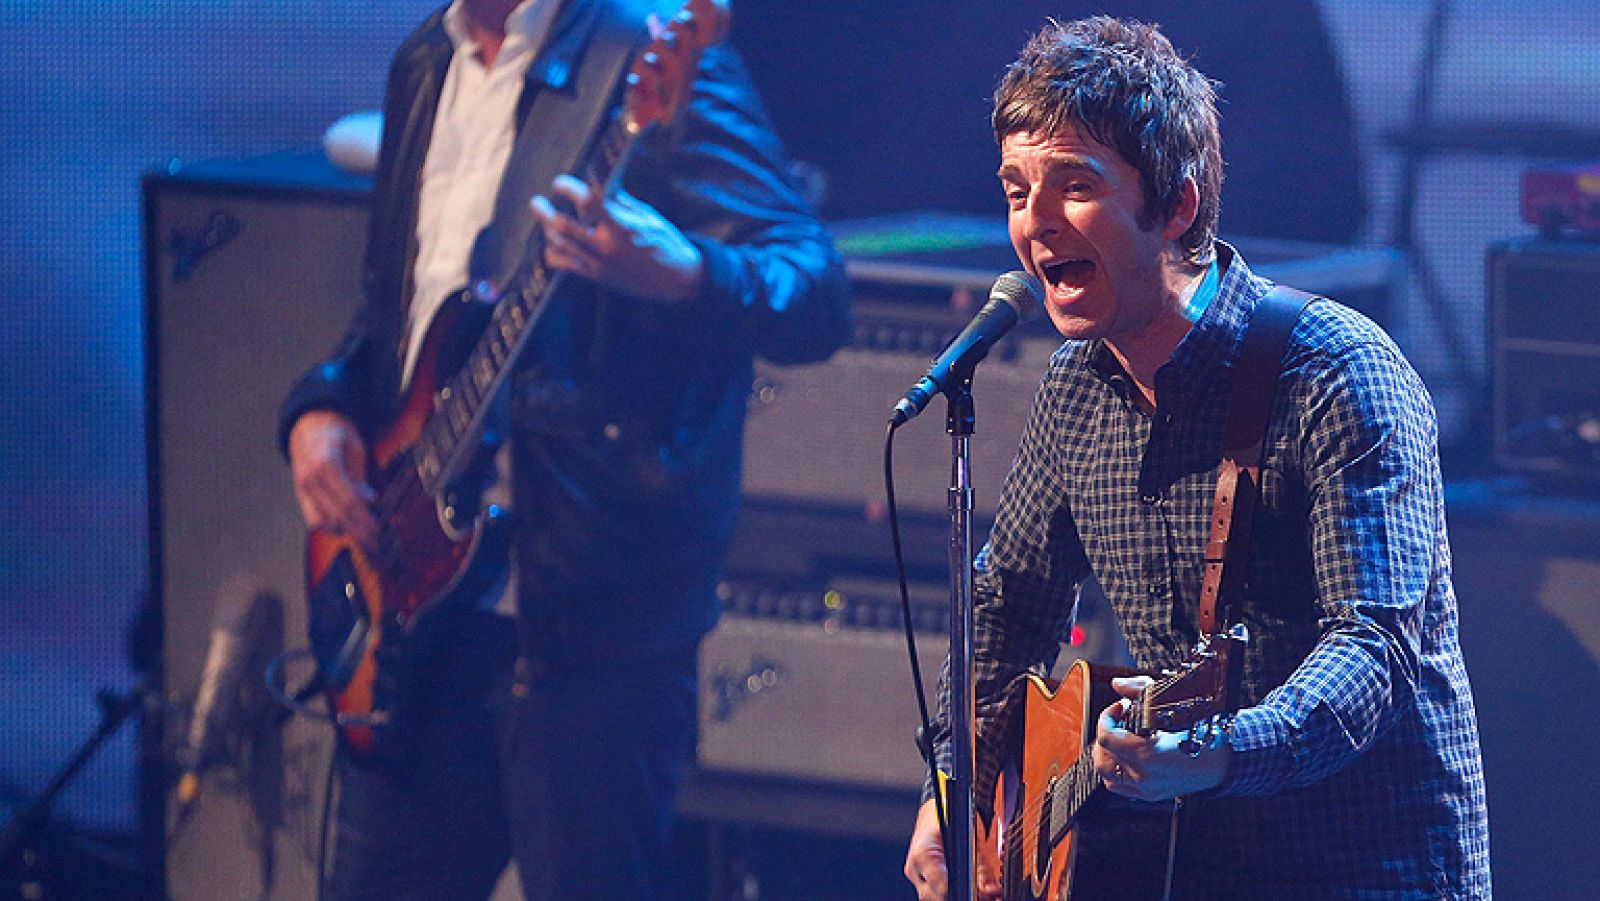 Lo mejor del iTunes Festival 2012 - Noel Gallagher, Norah Jones o David Guetta - 18/01/13